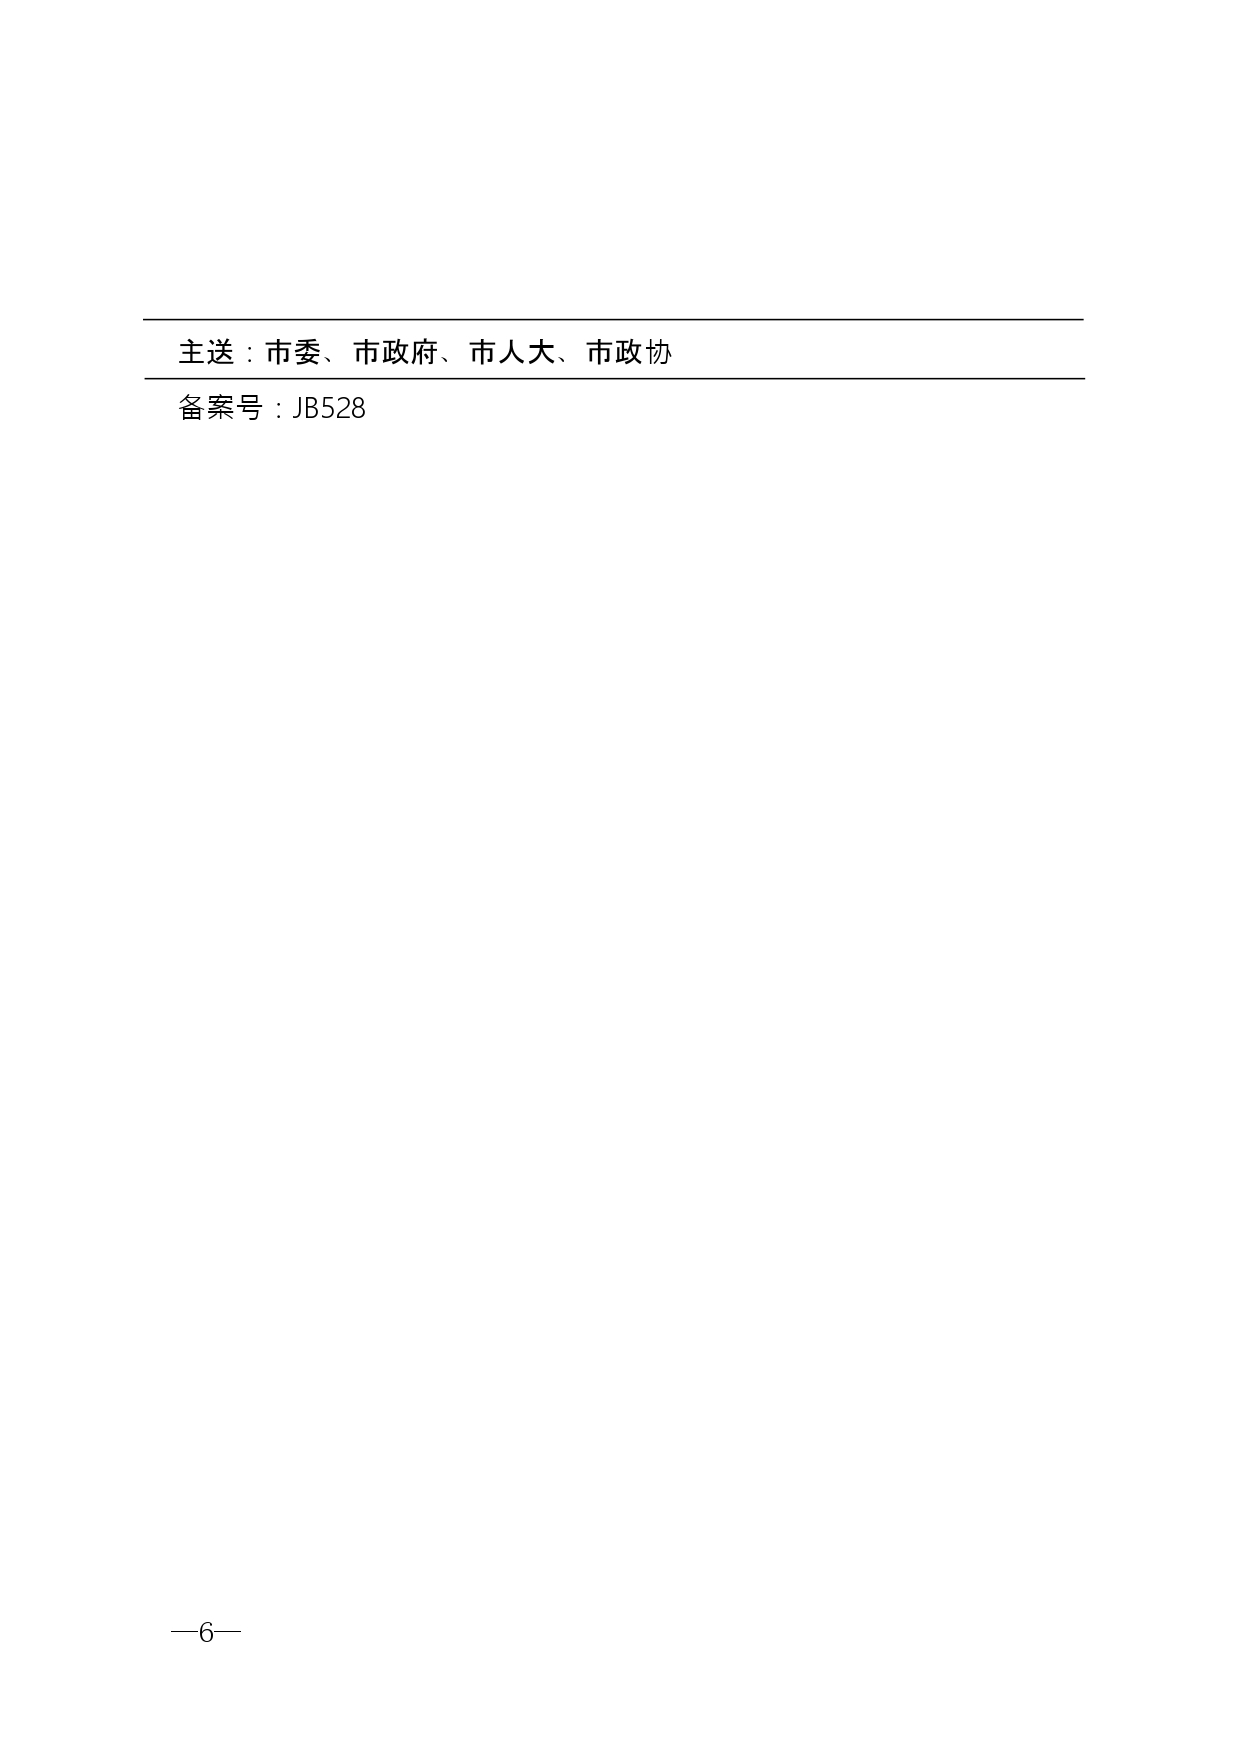 2021年第2期（关于构建南京地区护理体系的建议）_page-0006.jpg